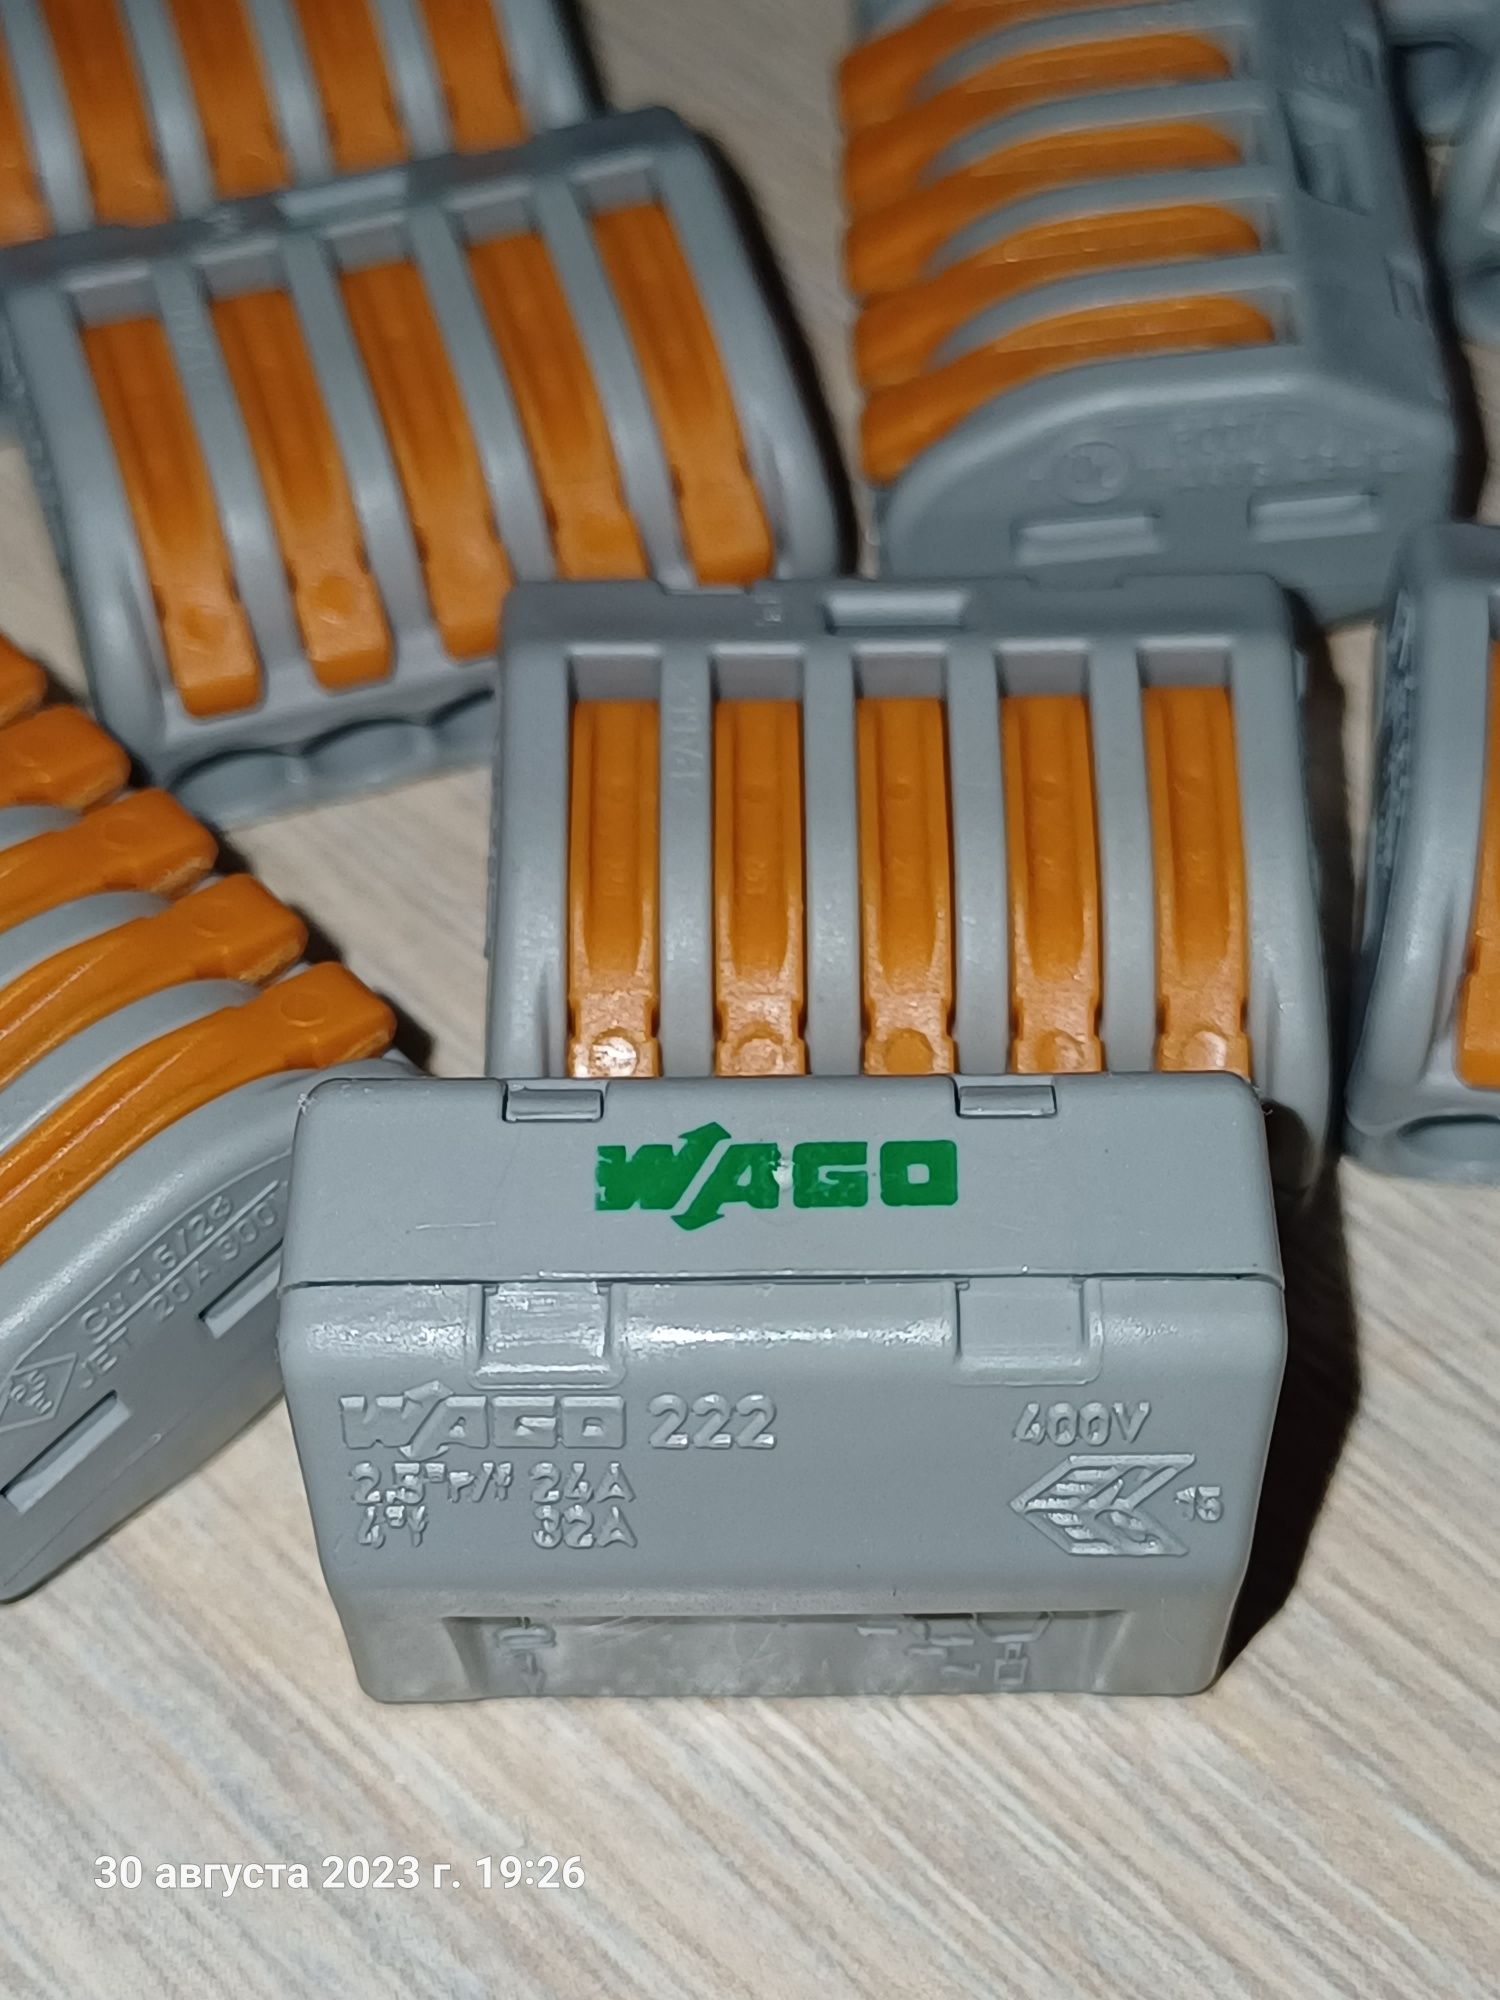 Продам соединительные клемы, зажимы WAGO 5ти контактные.